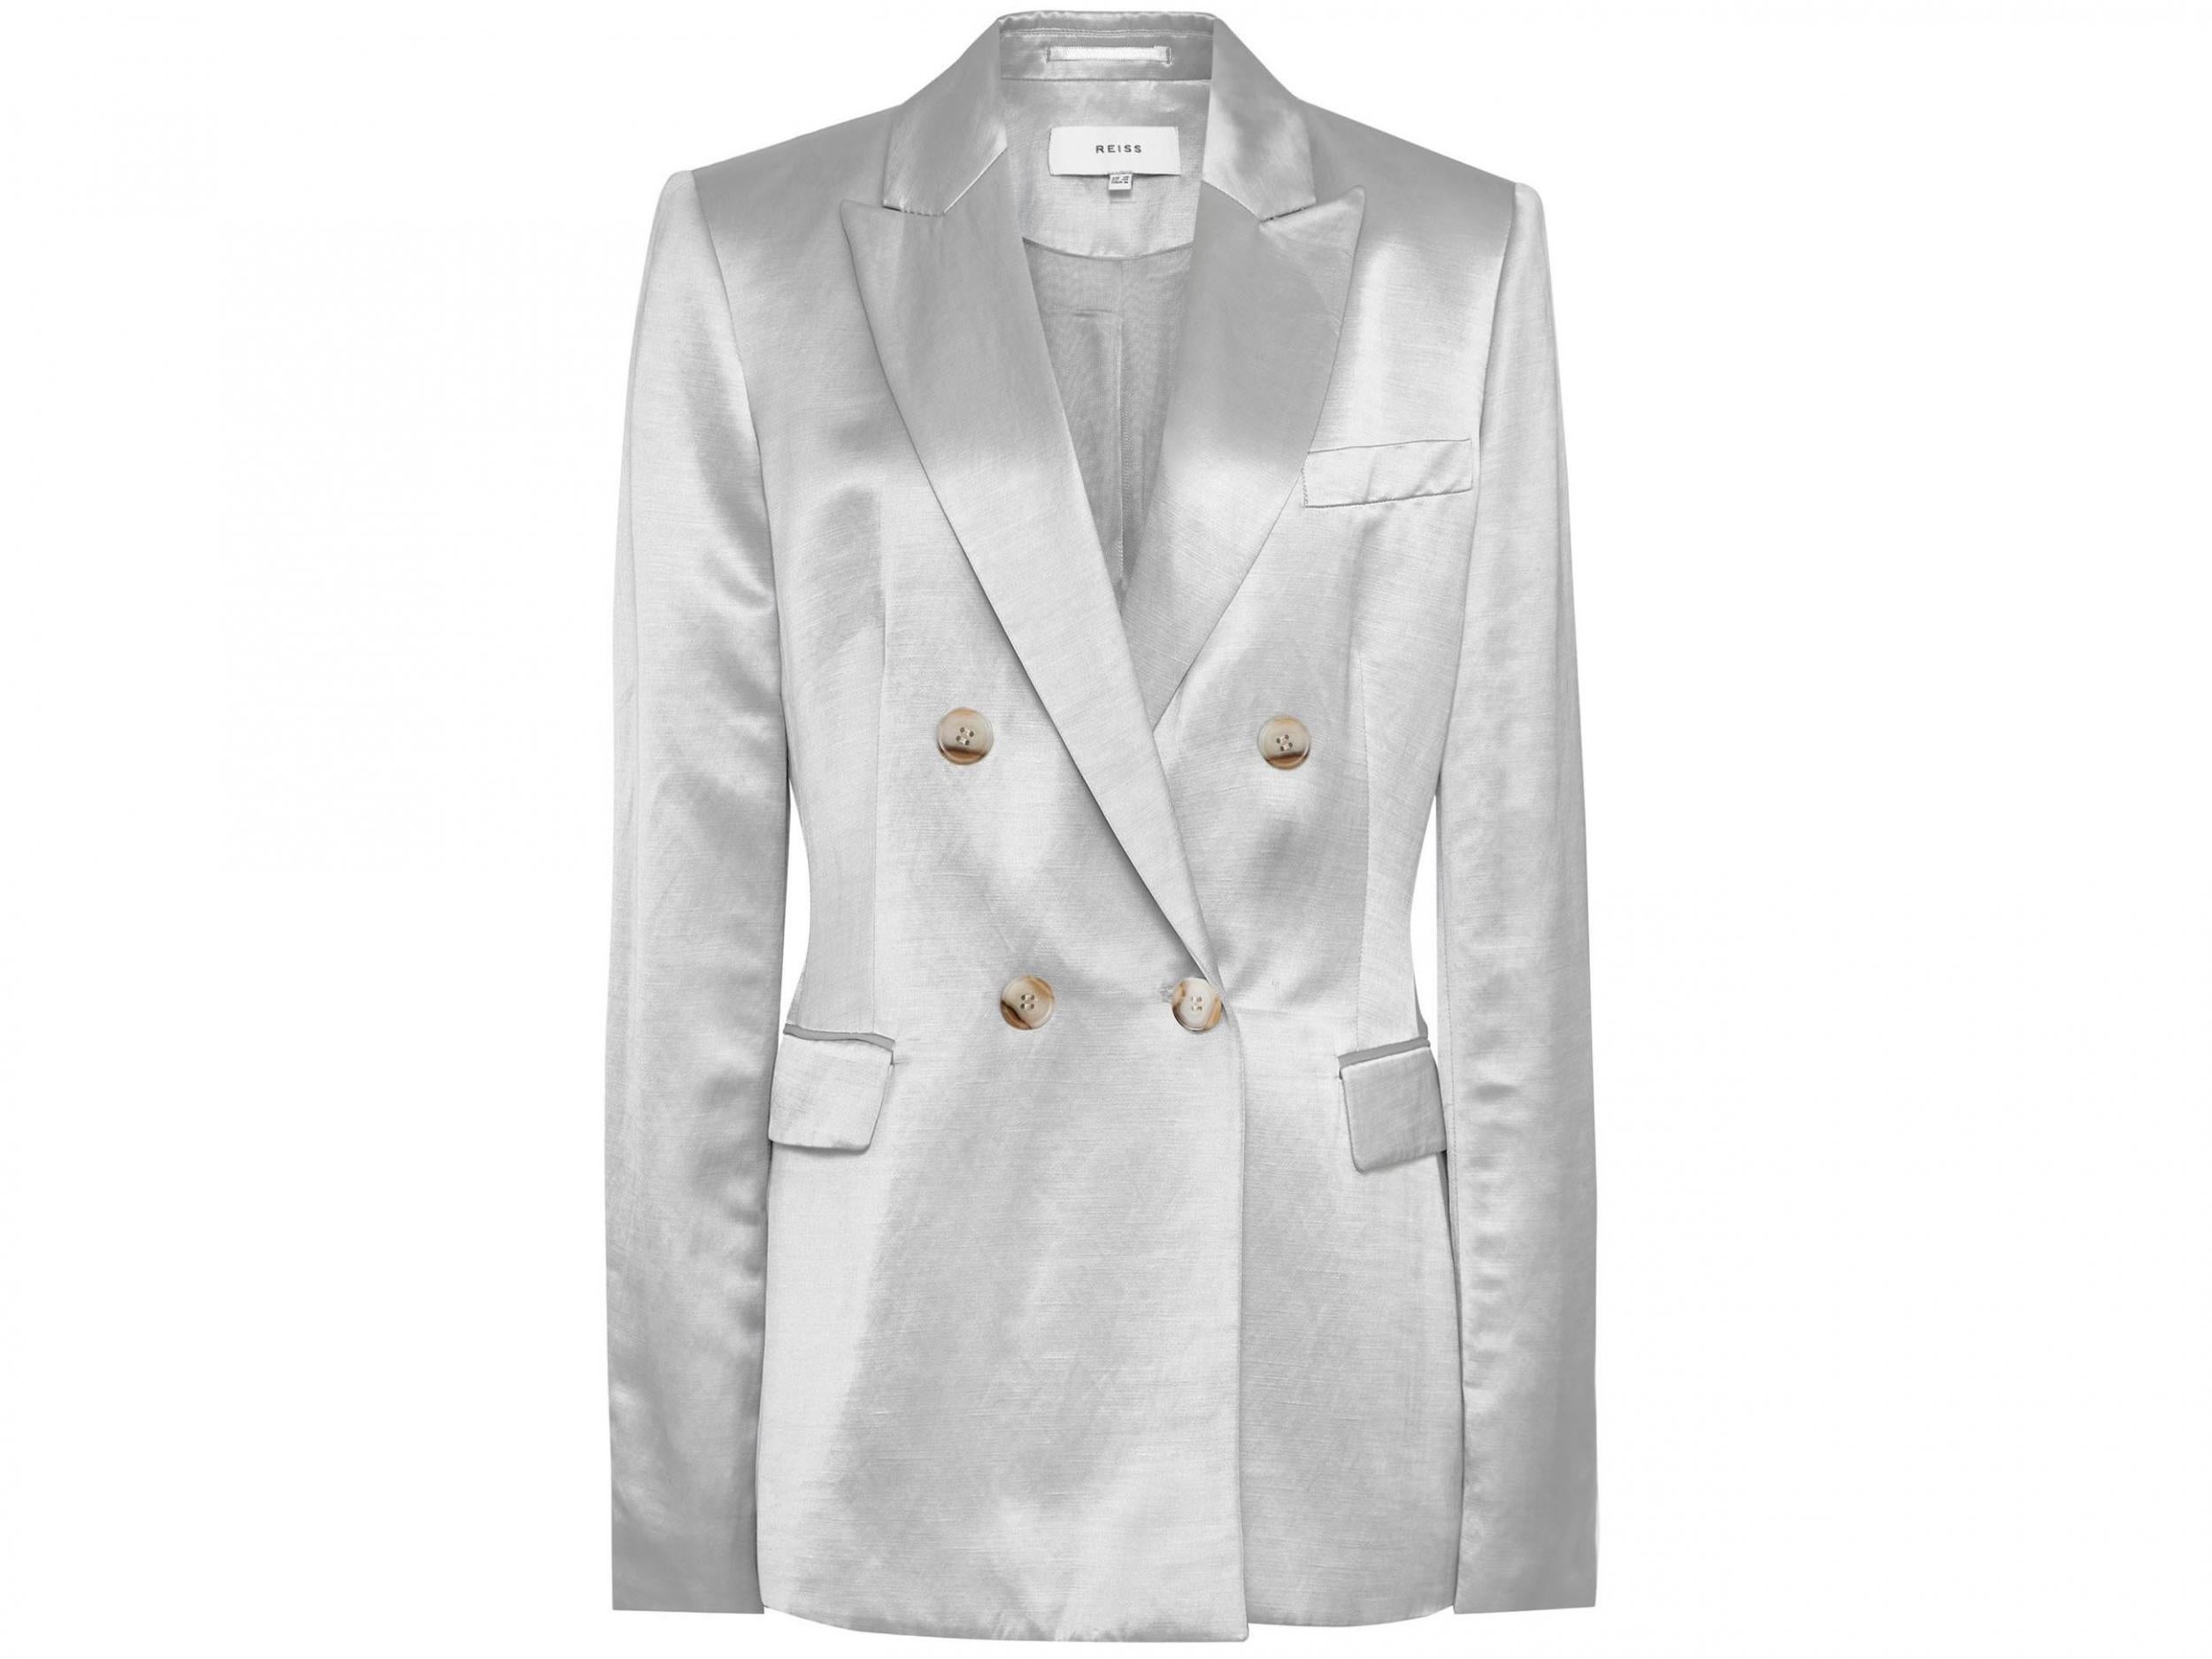 Solene jacket, £150, Reiss